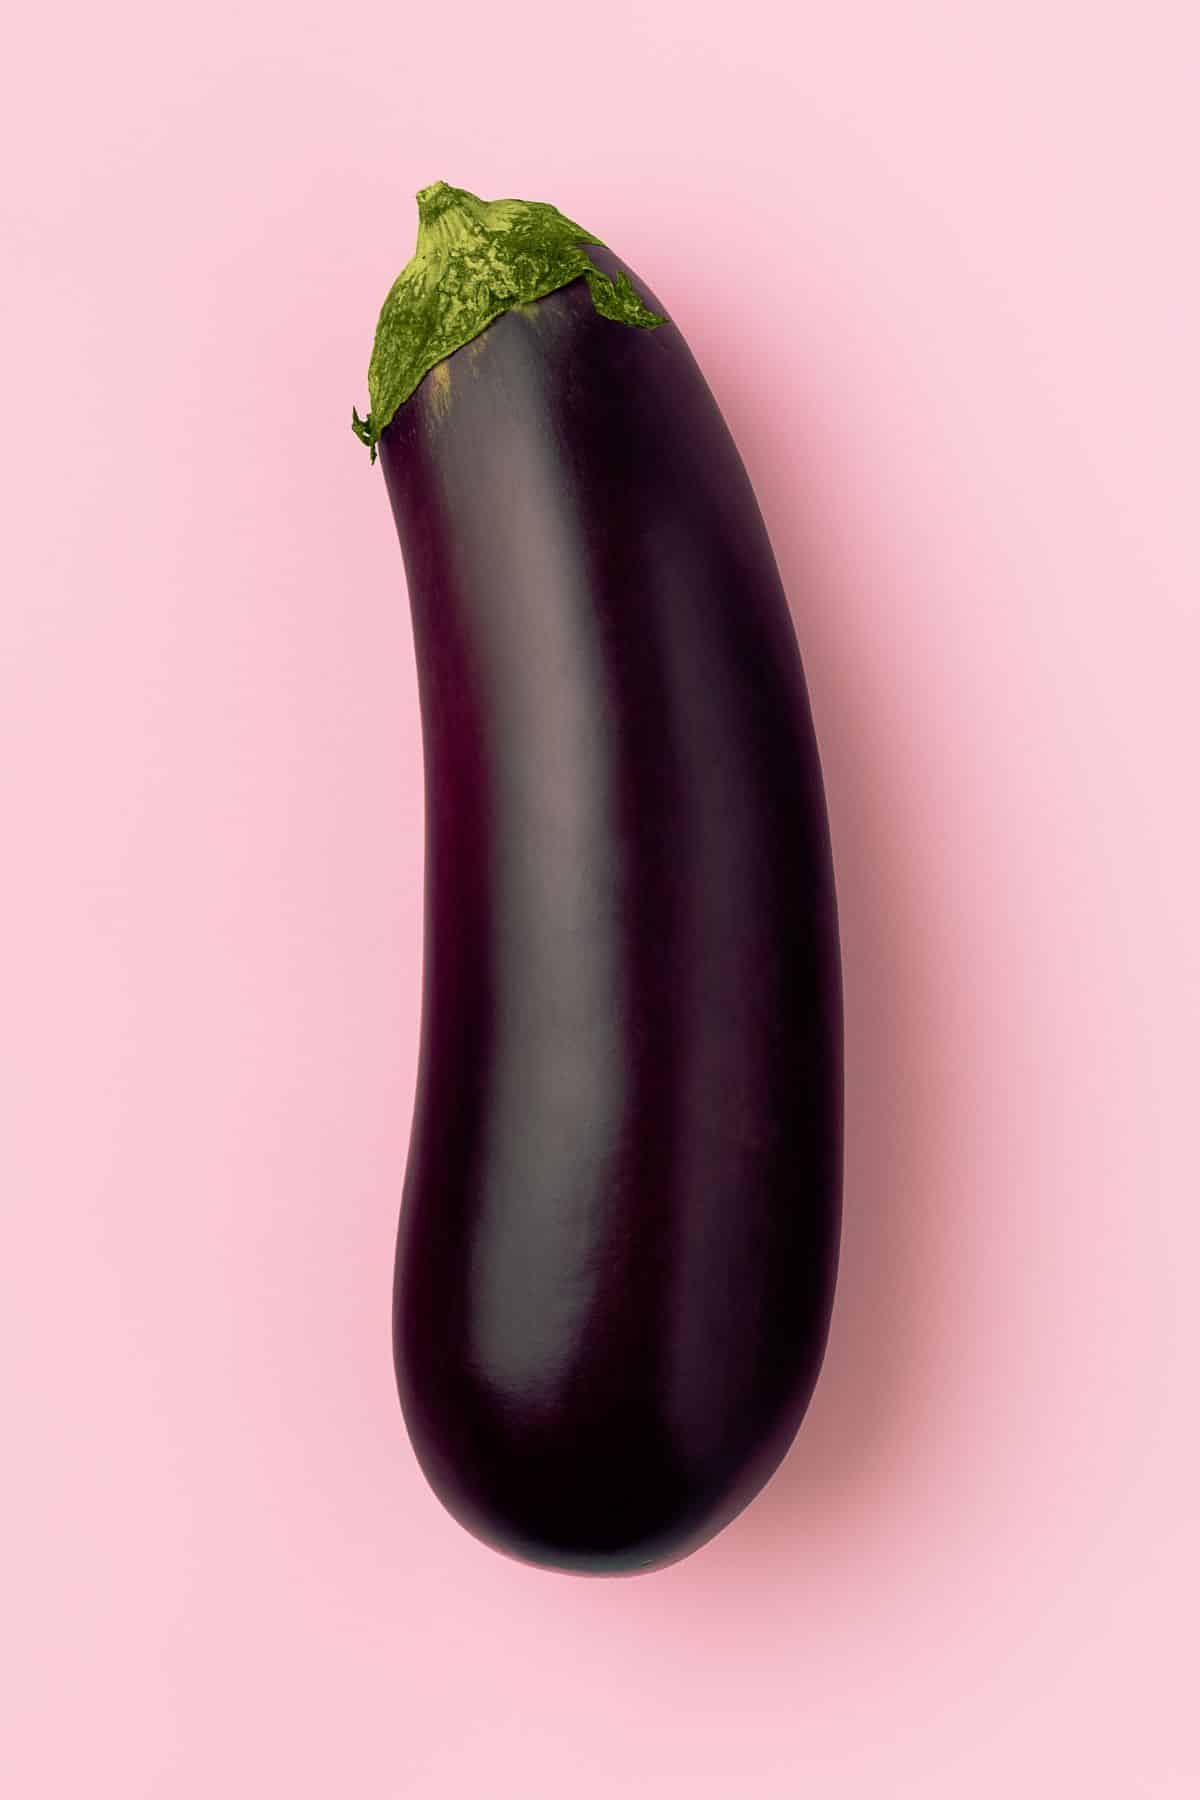 eggplant on table.